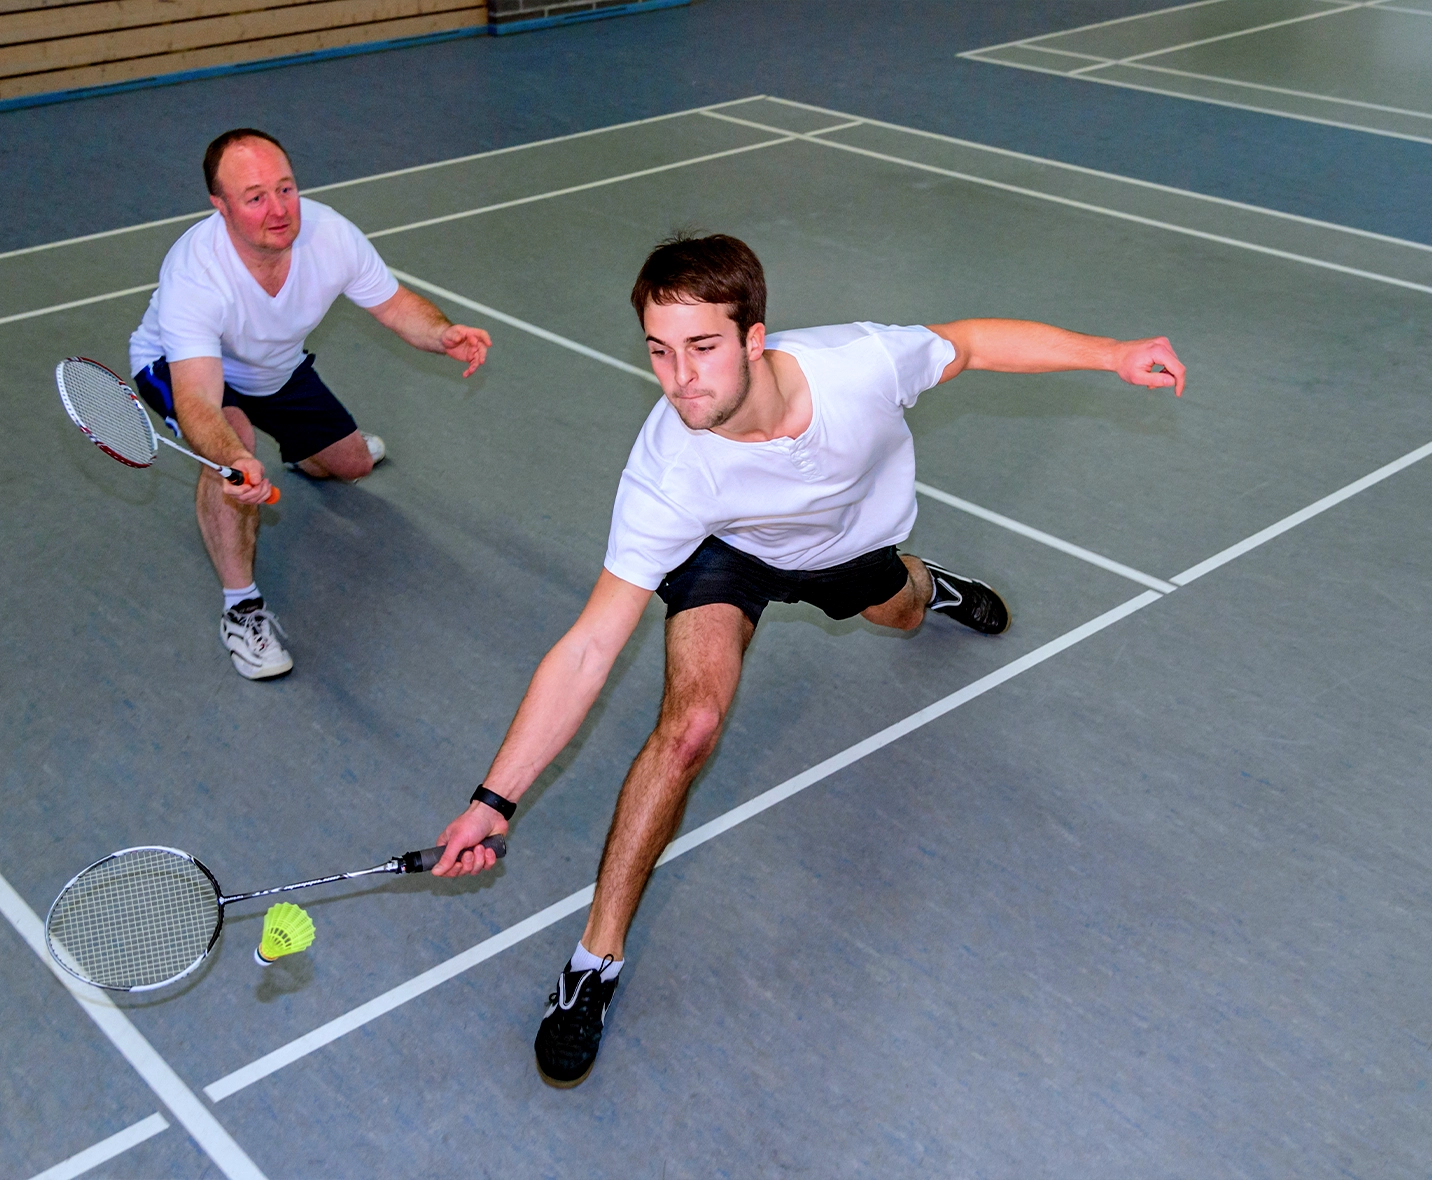 Rally Sports Club: Premier Badminton Court Rental- Oshawa, CA